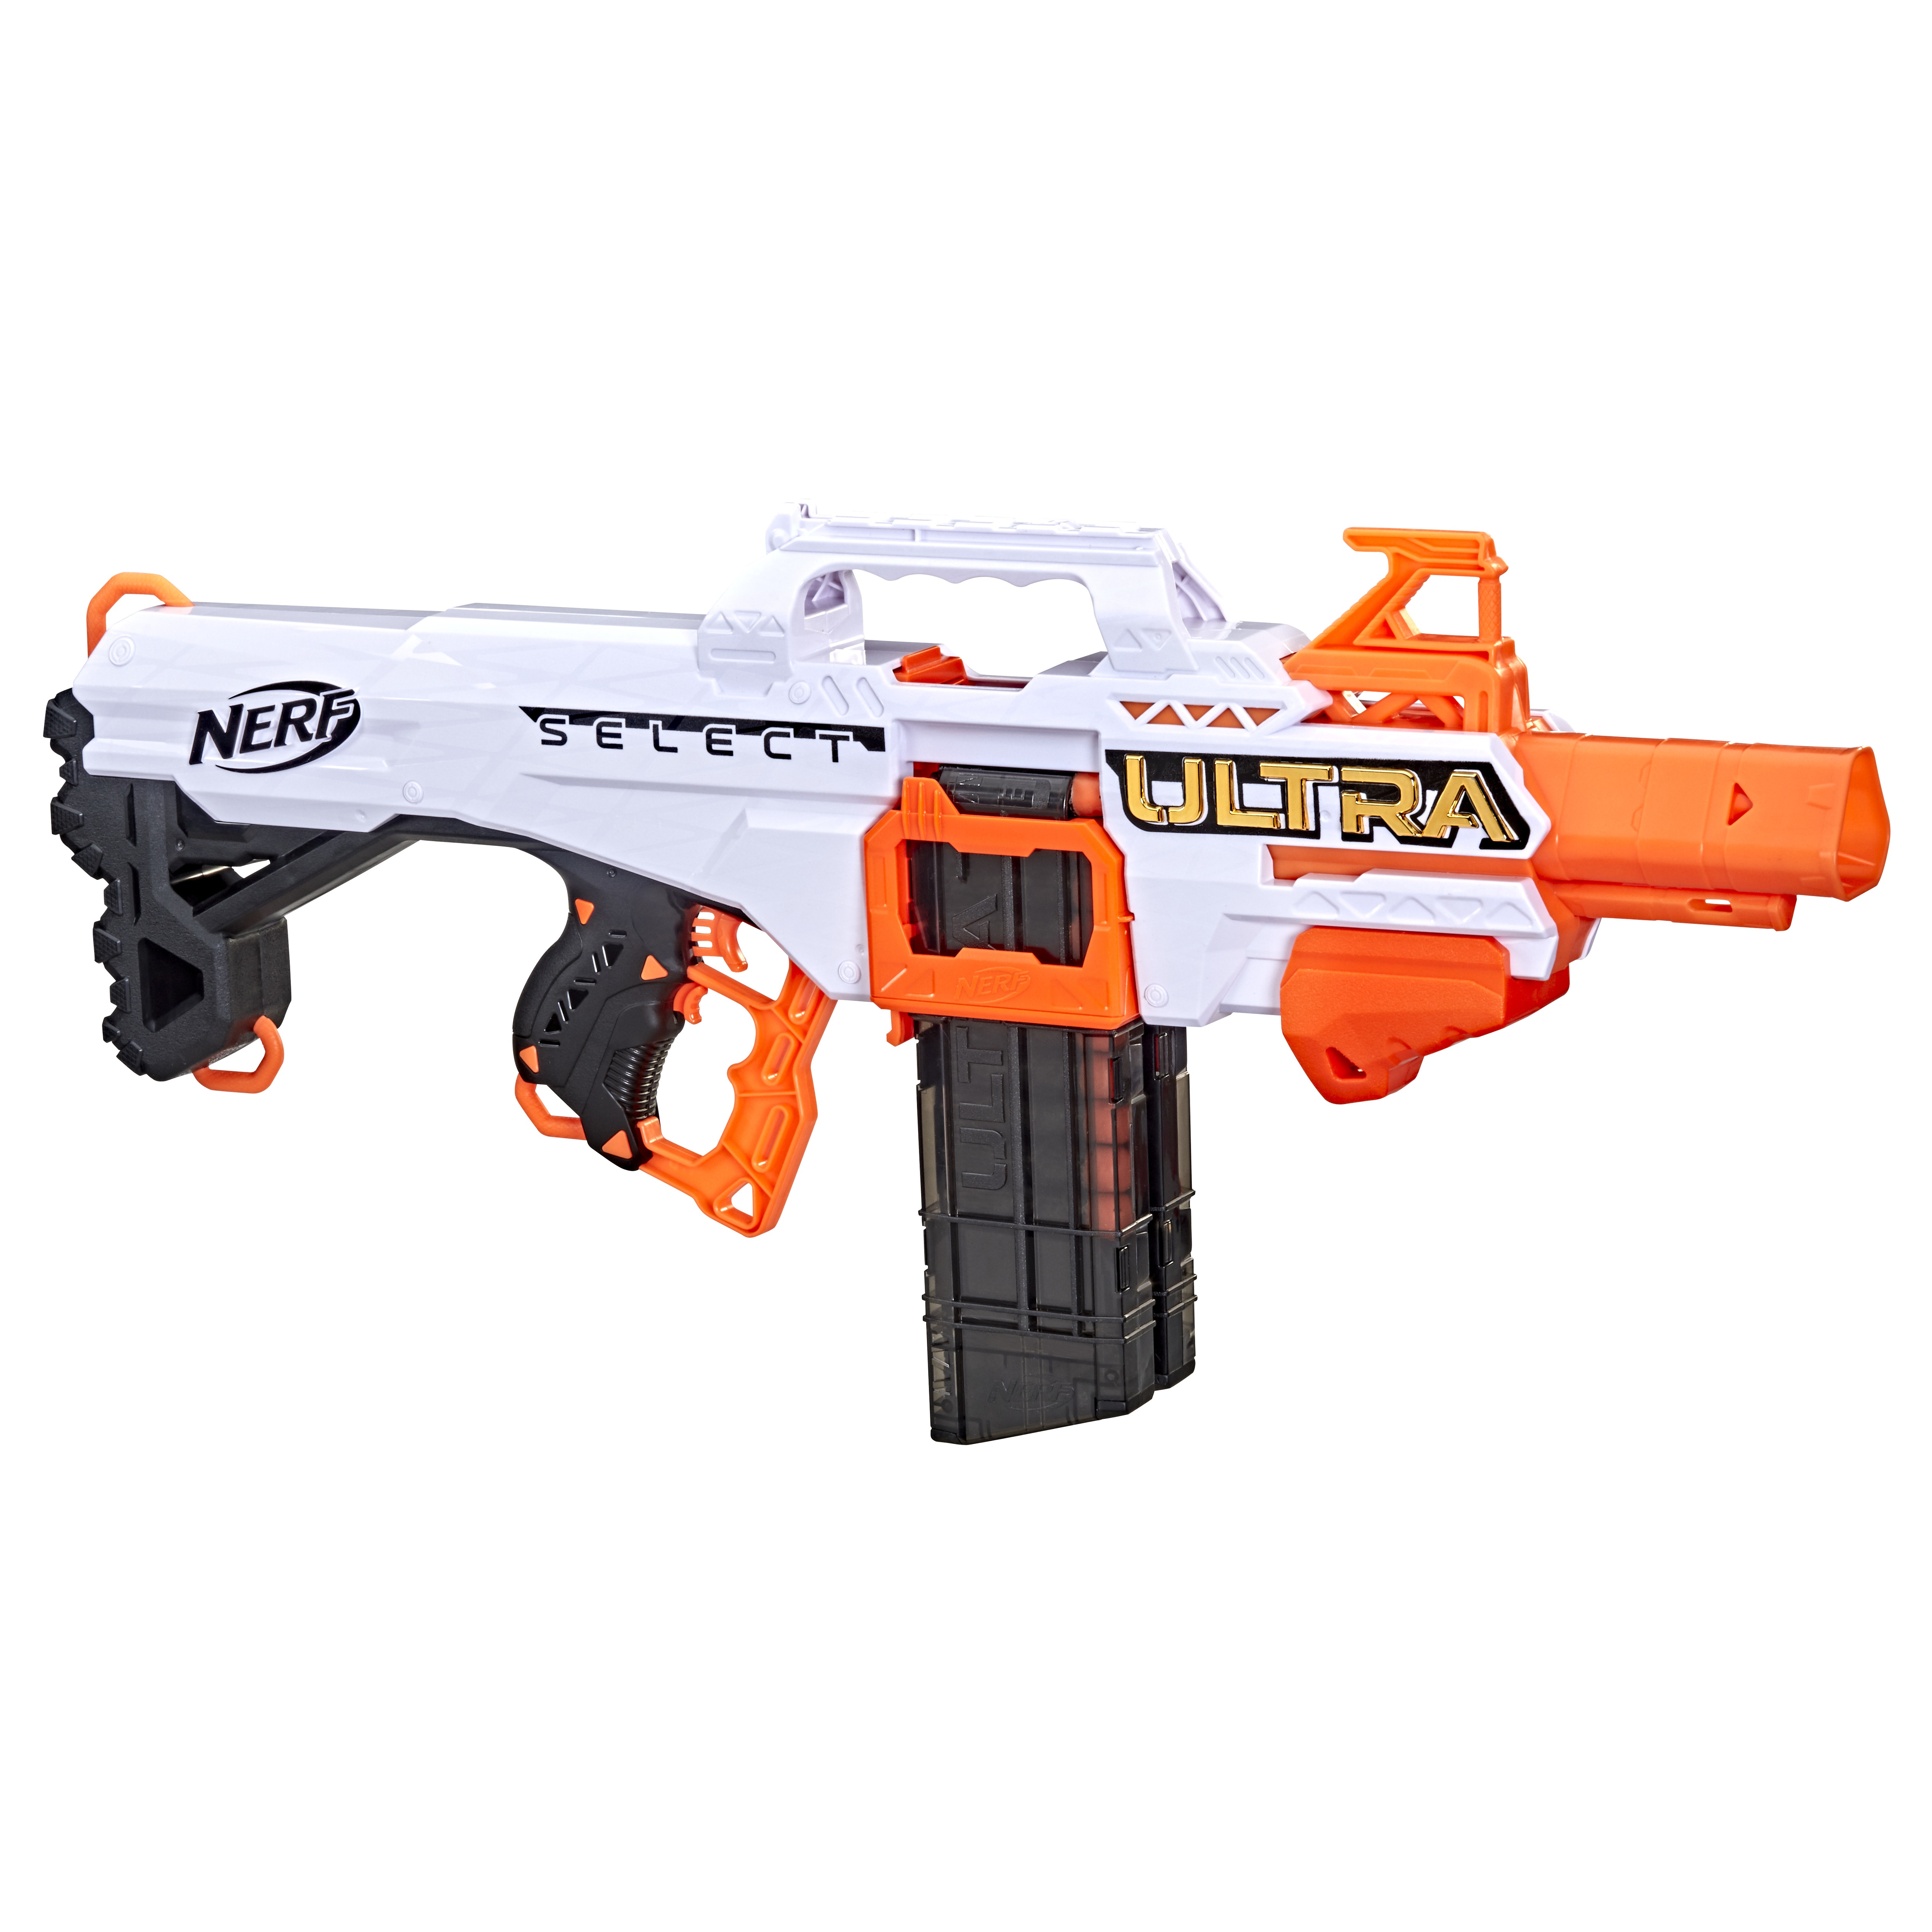 Pack de recharge de balles noires pour Nerf Ultra, 24 pièces, pistolet  jouet, ultime dans fléchettes, jeu de Sniper, Compatible uniquement Ultra